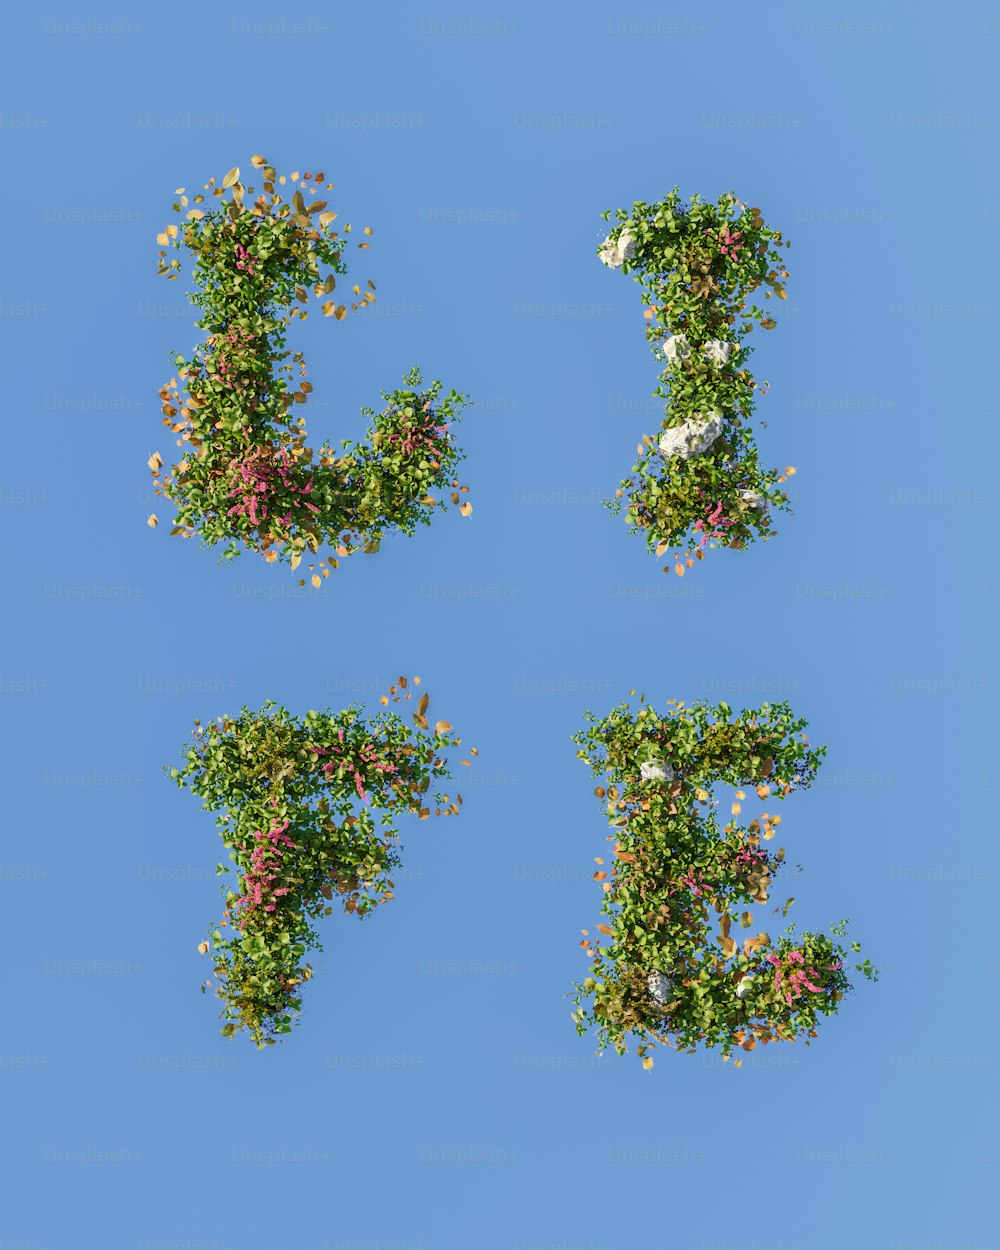 Les lettres E, F et F sont faites de fleurs